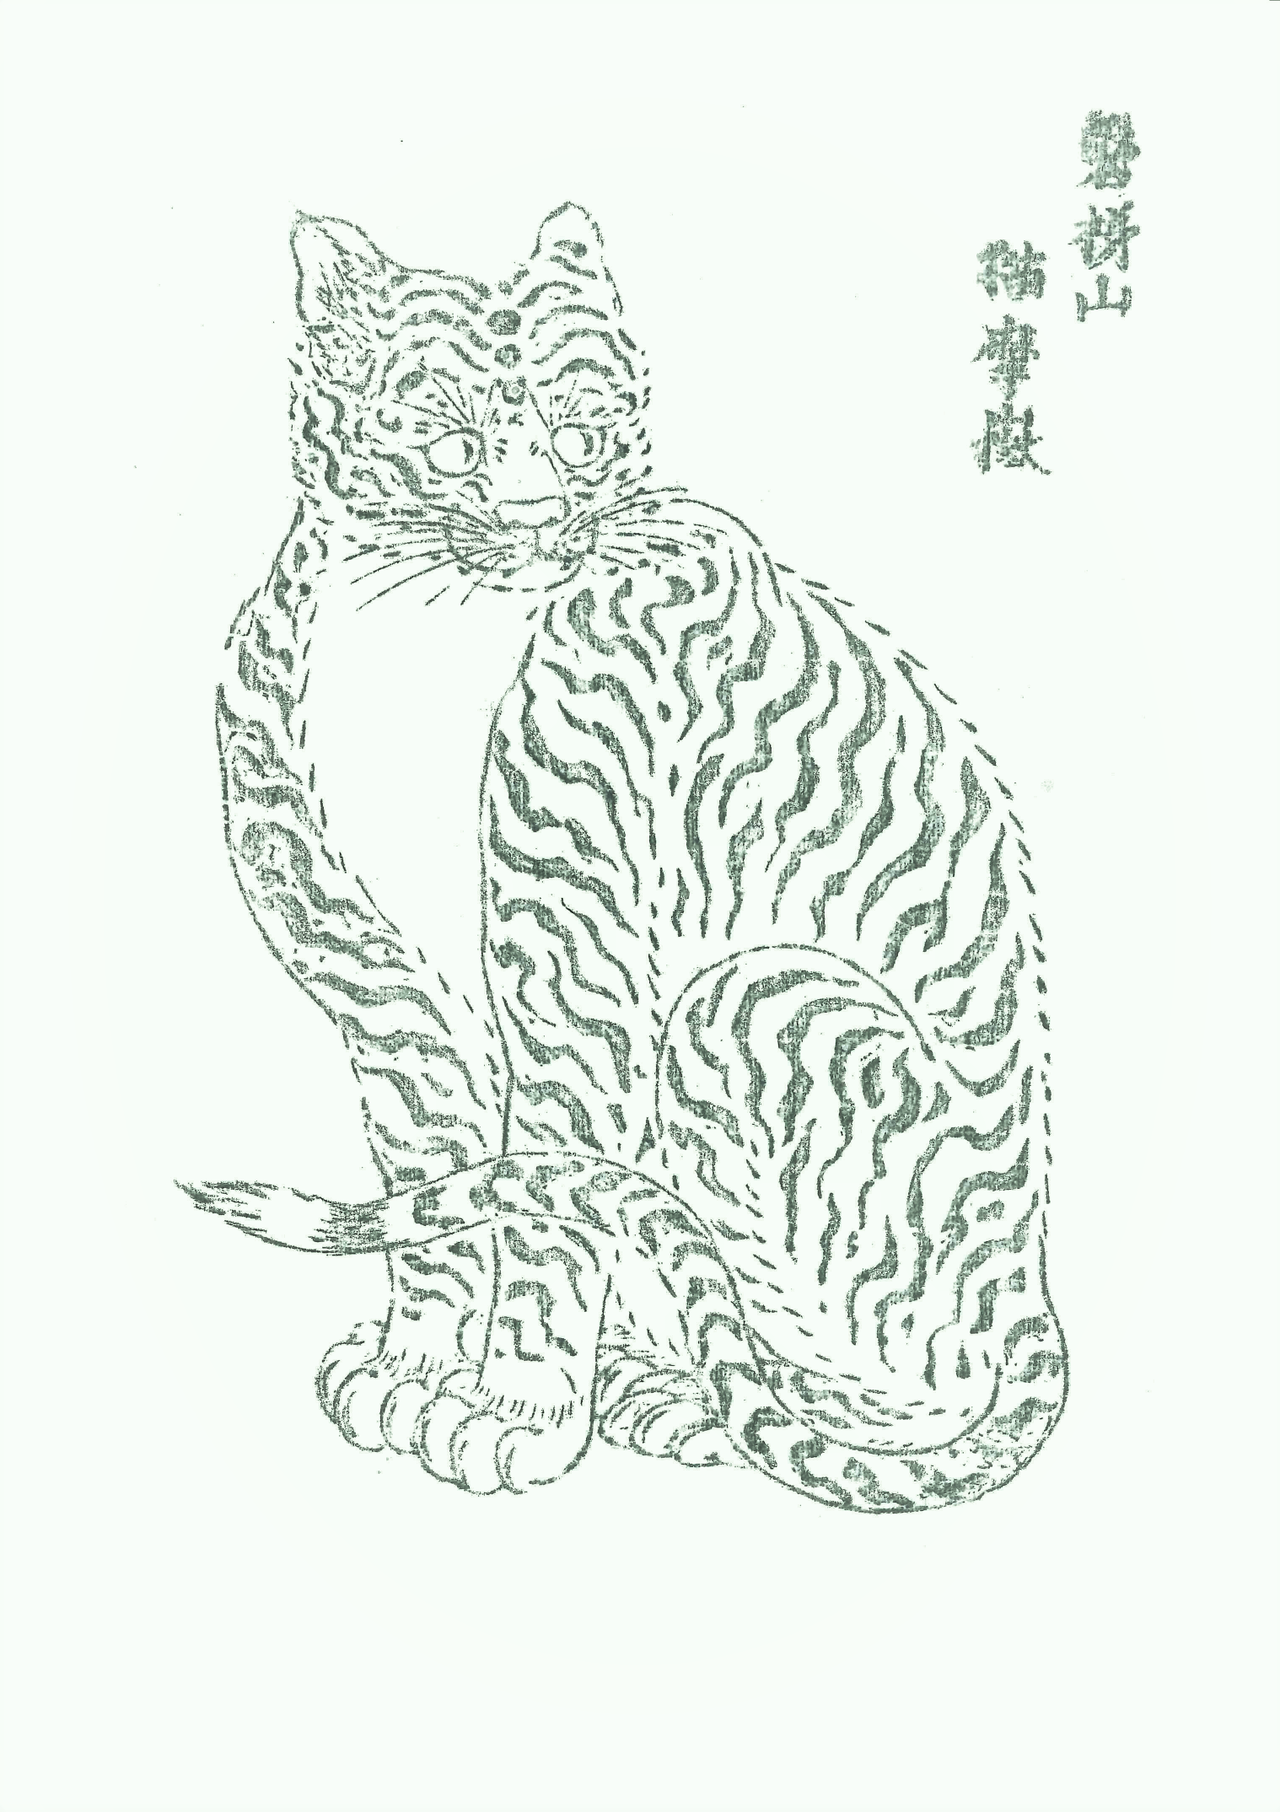 Cuando la sericultura era una actividad en auge, en el santuario de Bandai (Fukushima) repartían amuletos con la imagen de un gato. En la actualidad conservan una plancha de madera con la que se hacían y esta copia papel en el Museo de Bandai-san Enichi-ji.  